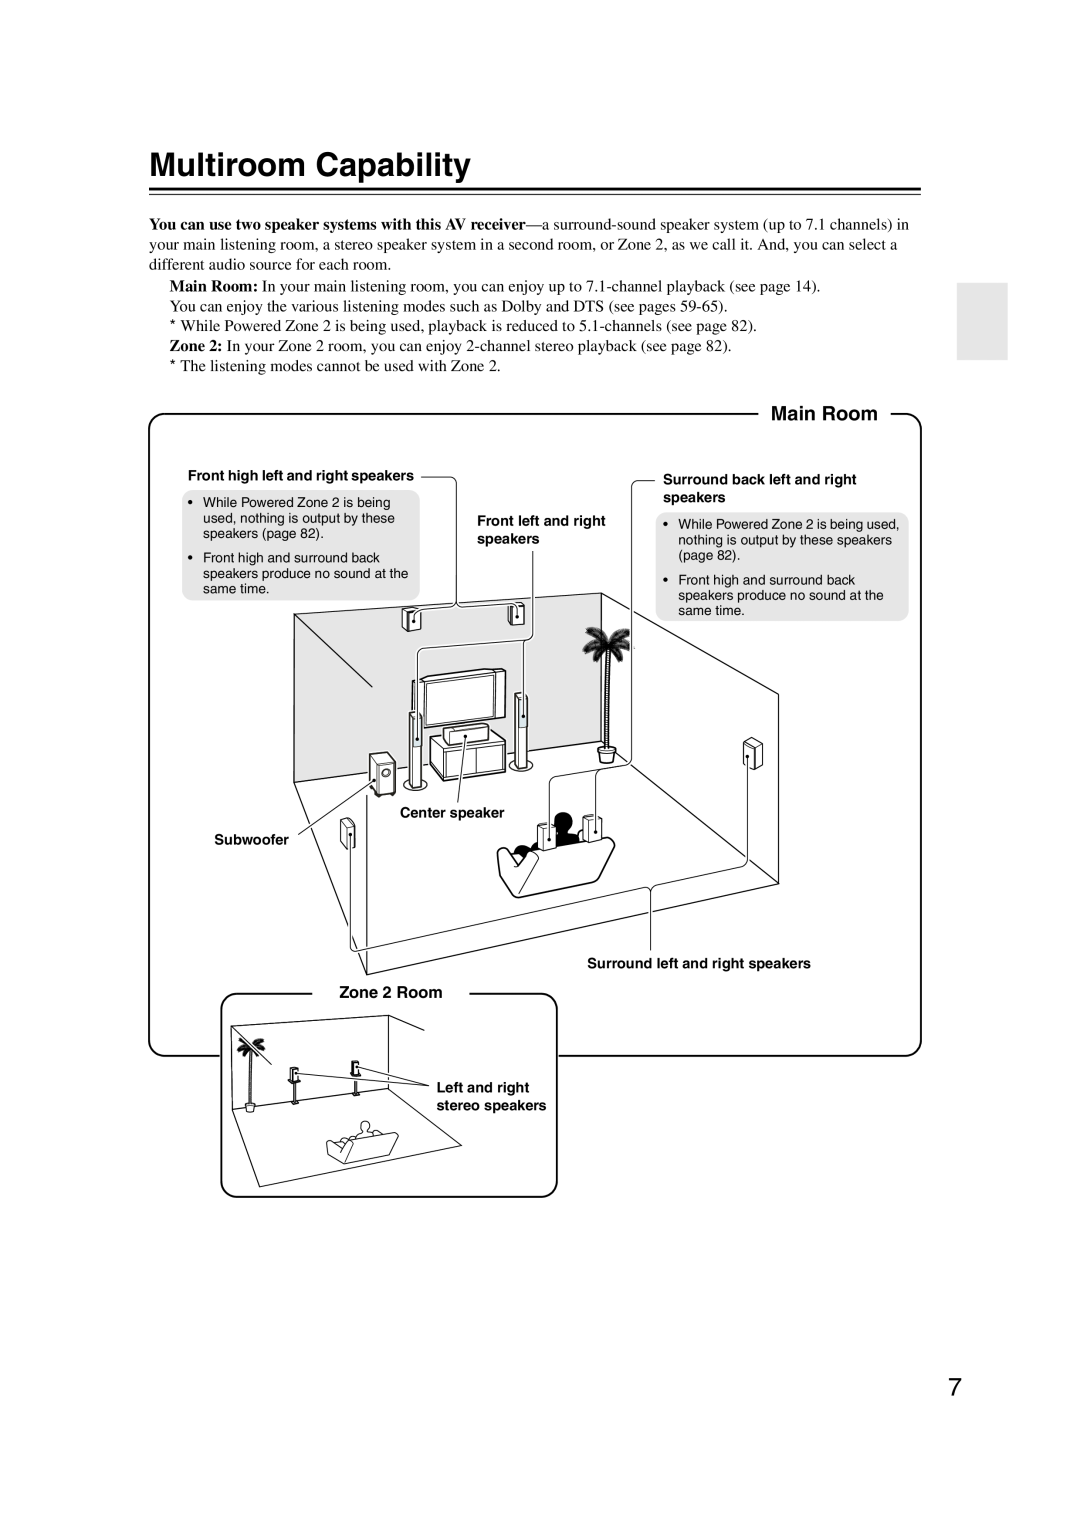 Onkyo HT-RC160 instruction manual Multiroom Capability, Main Room 